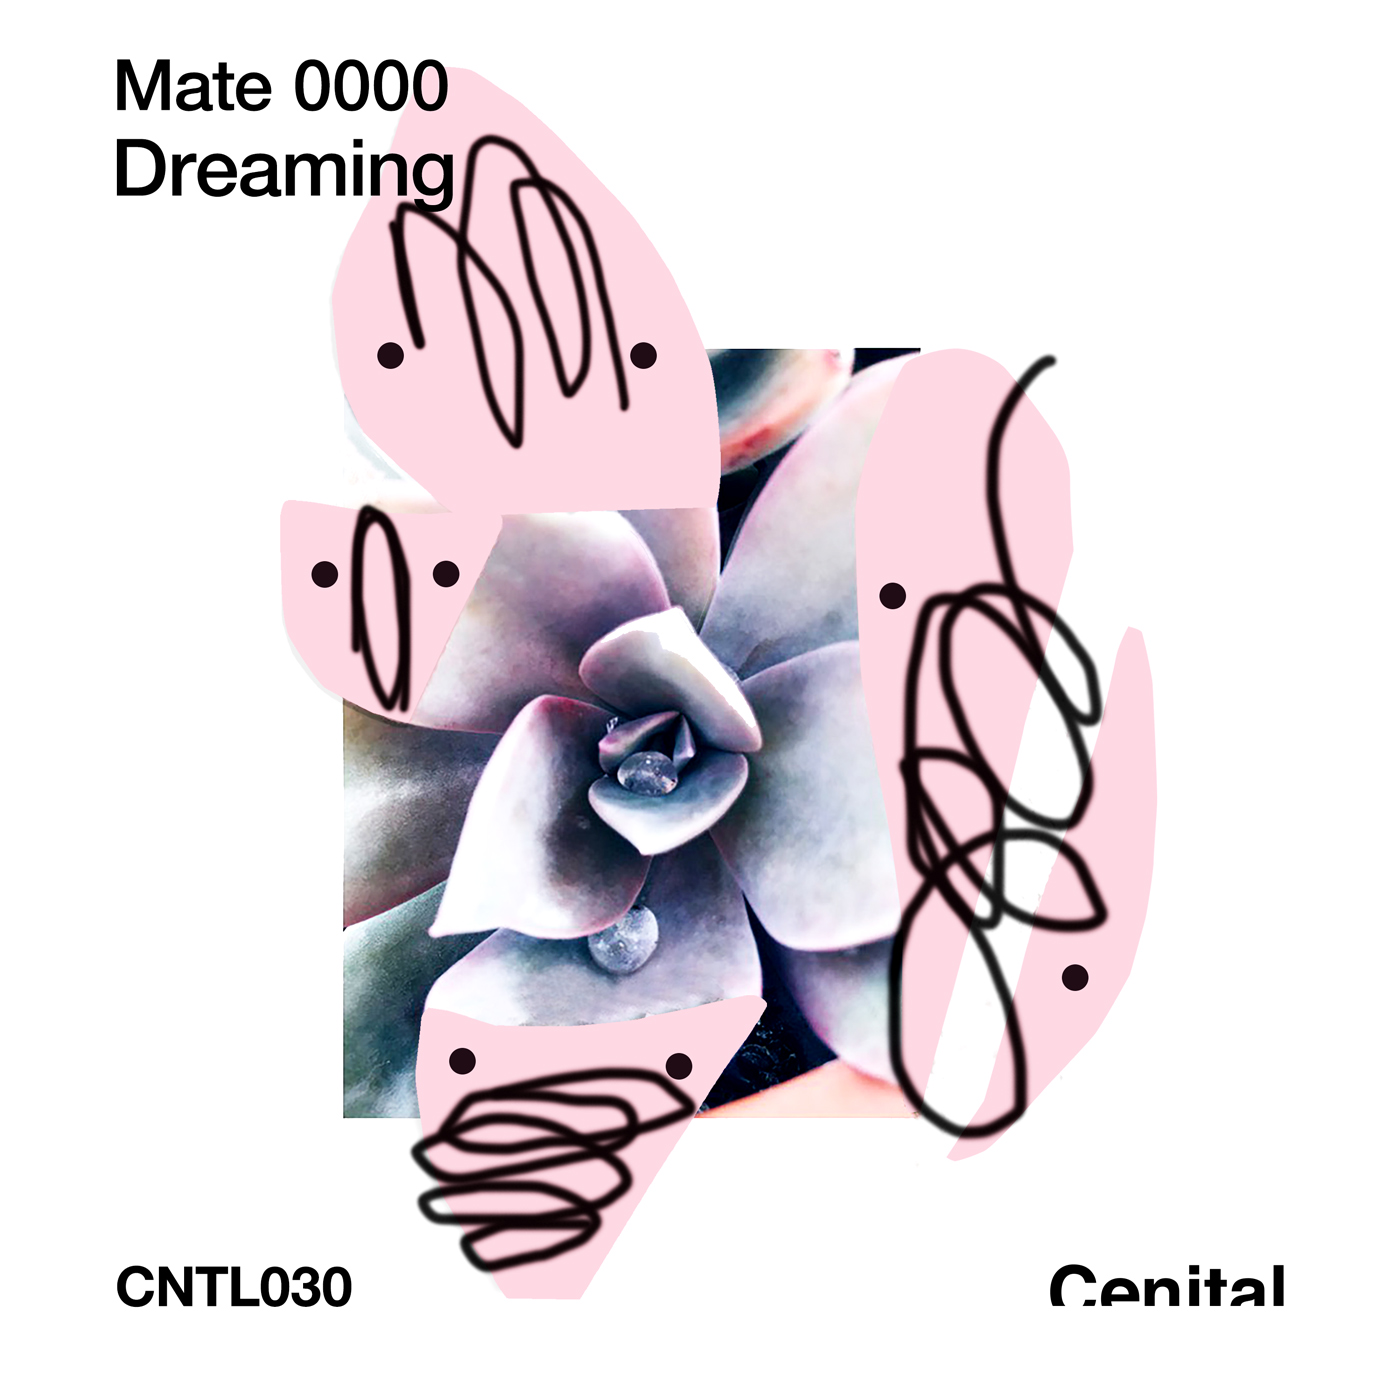 MATE 0000 – Dreaming [CNTL030]